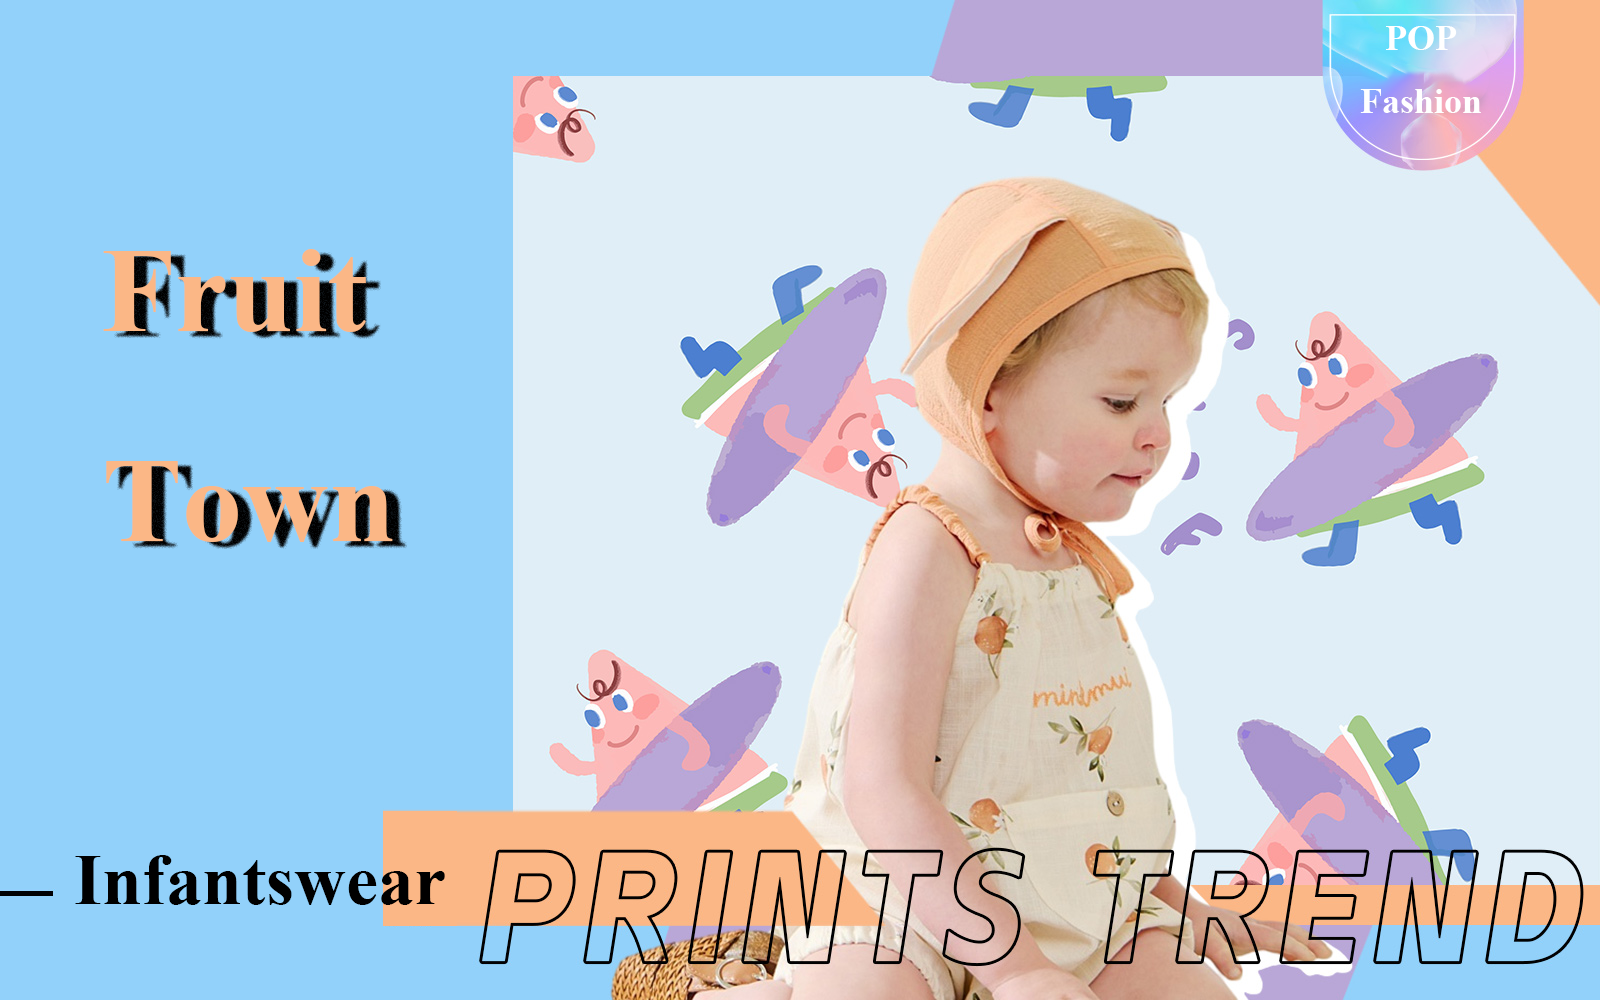 Fruit Town -- The Pattern Trend for Infantswear